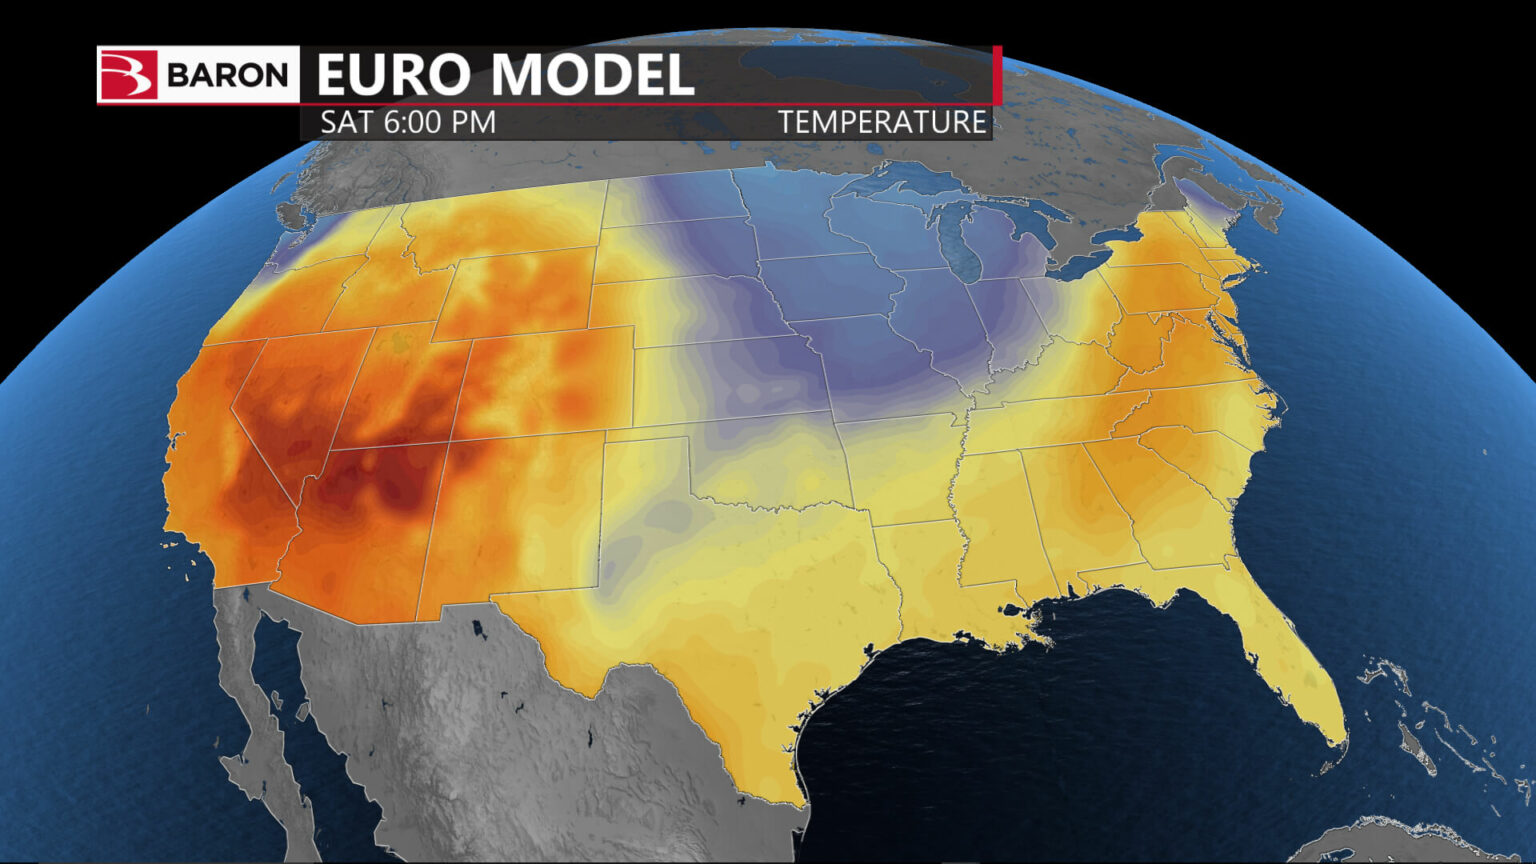 Sceen shot of Euro model temperatures